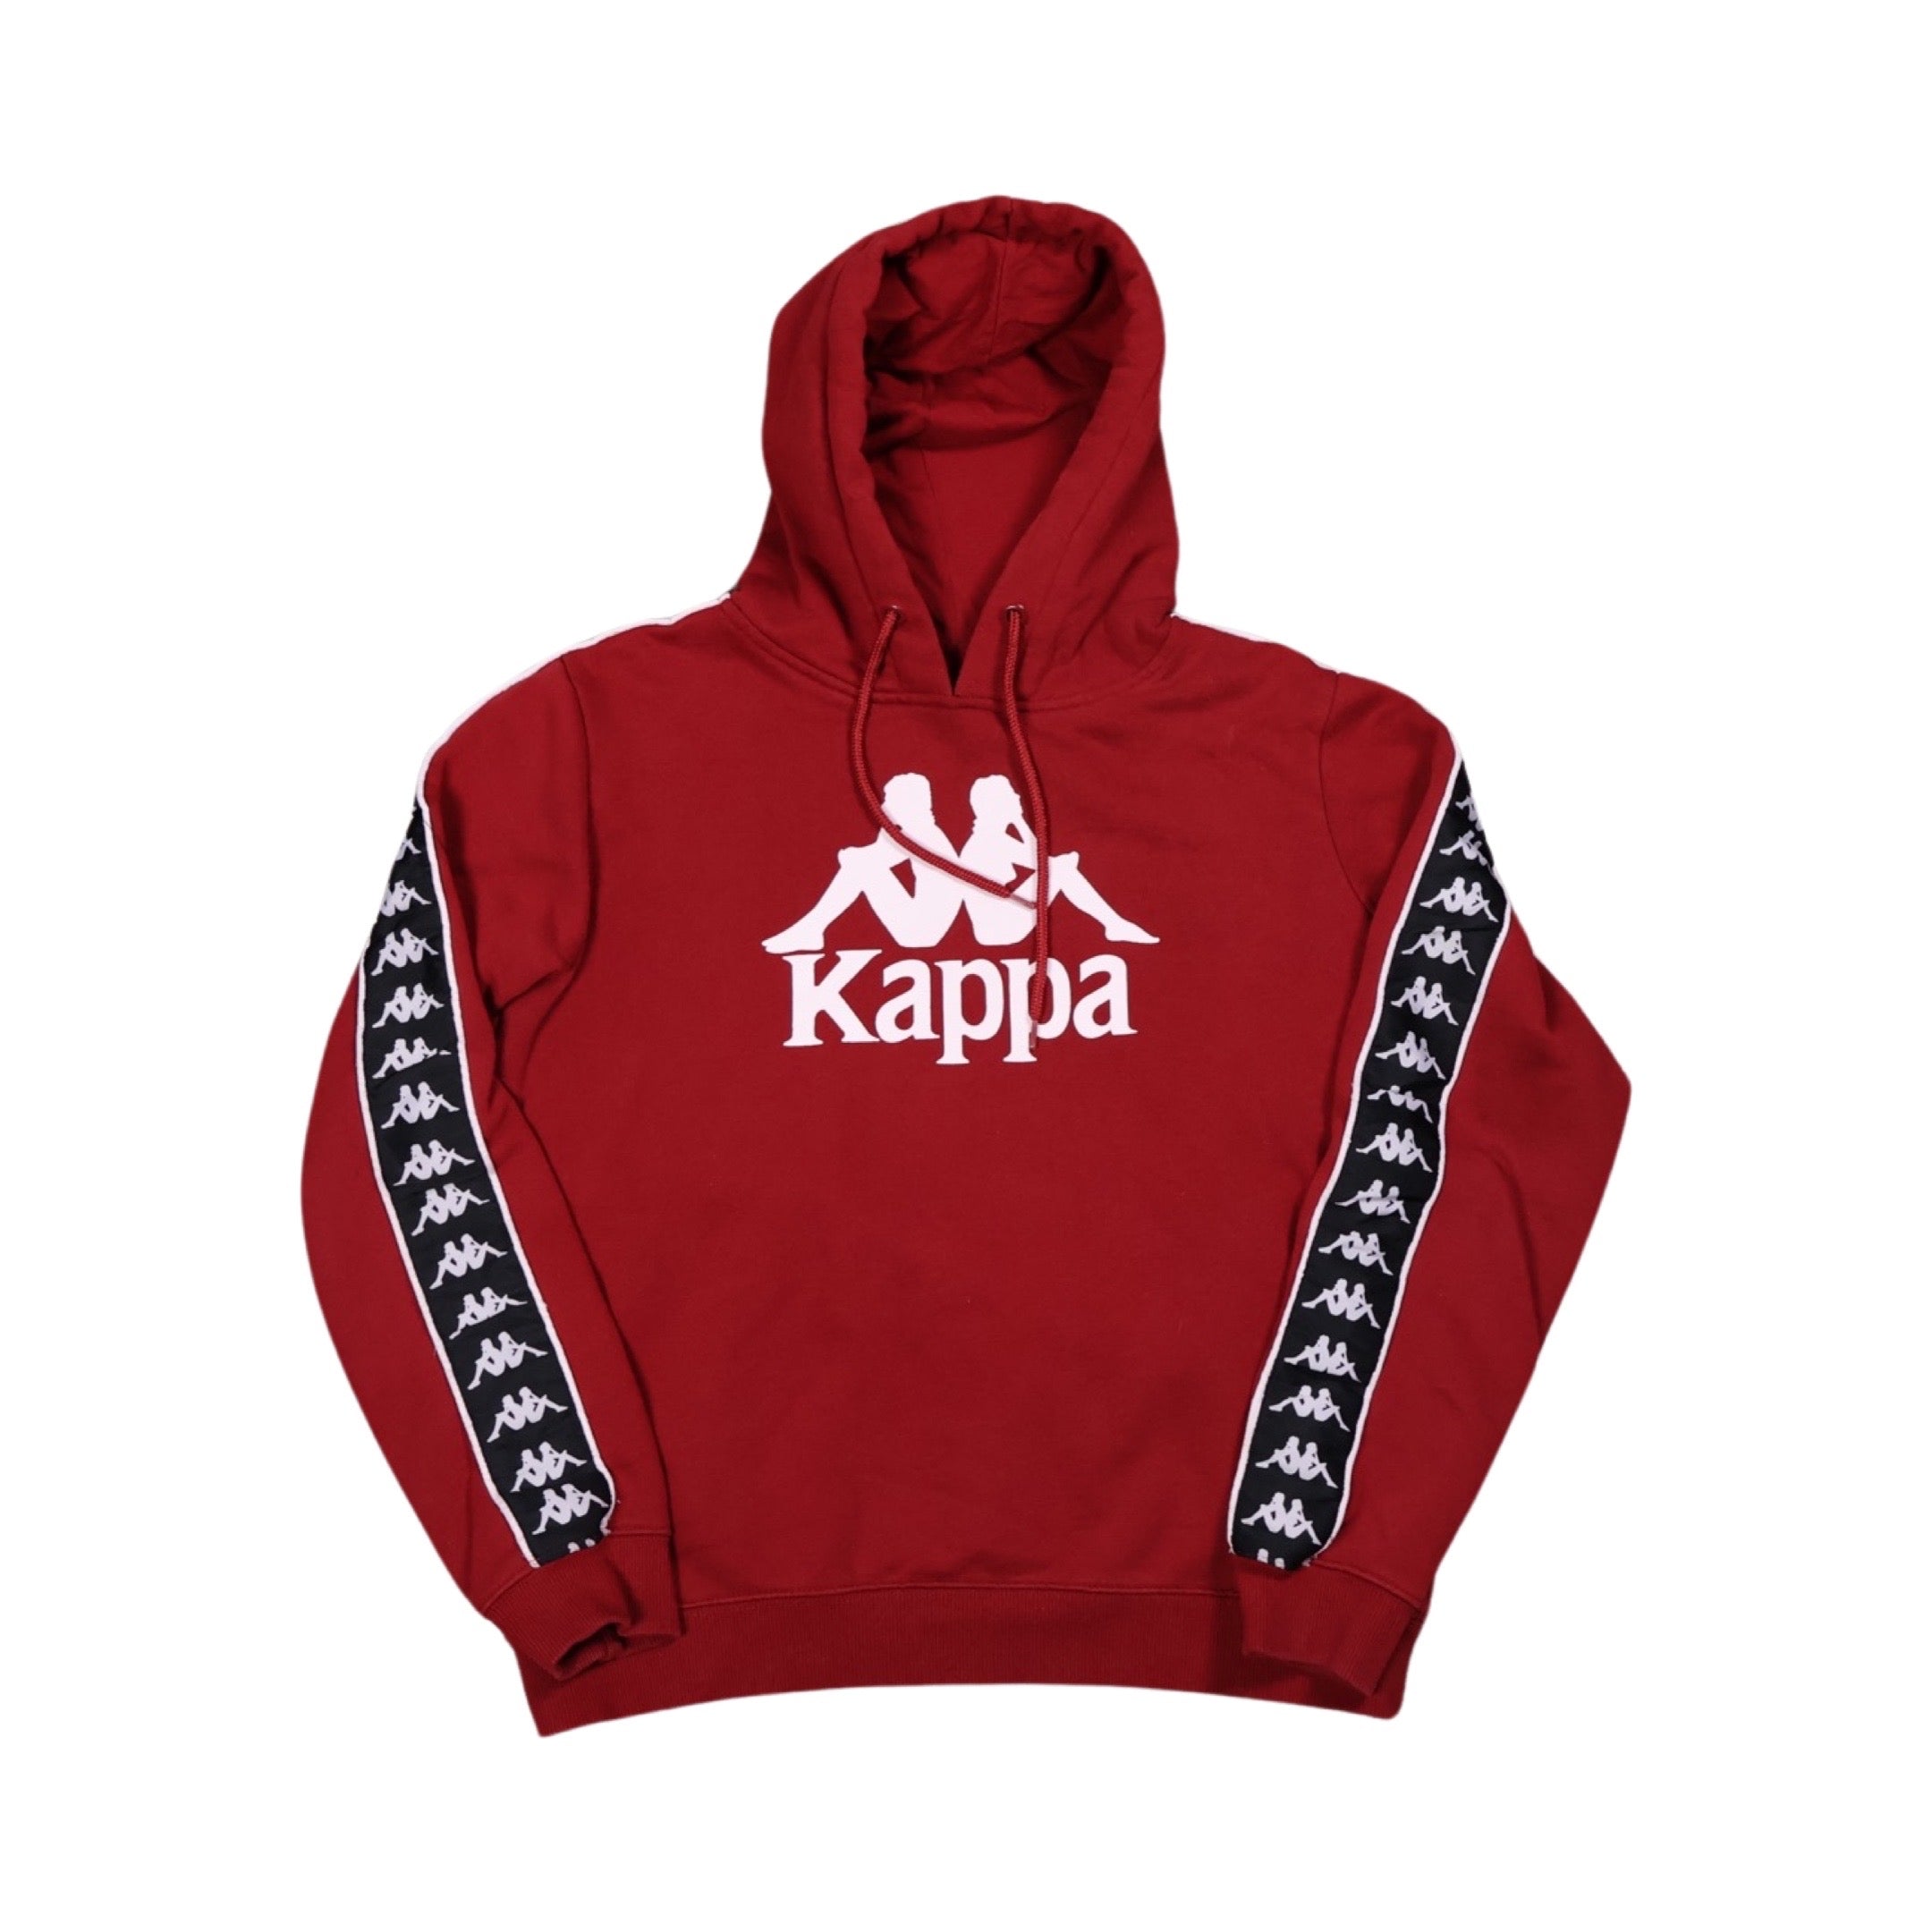 Red Kappa Hoodie (Medium)